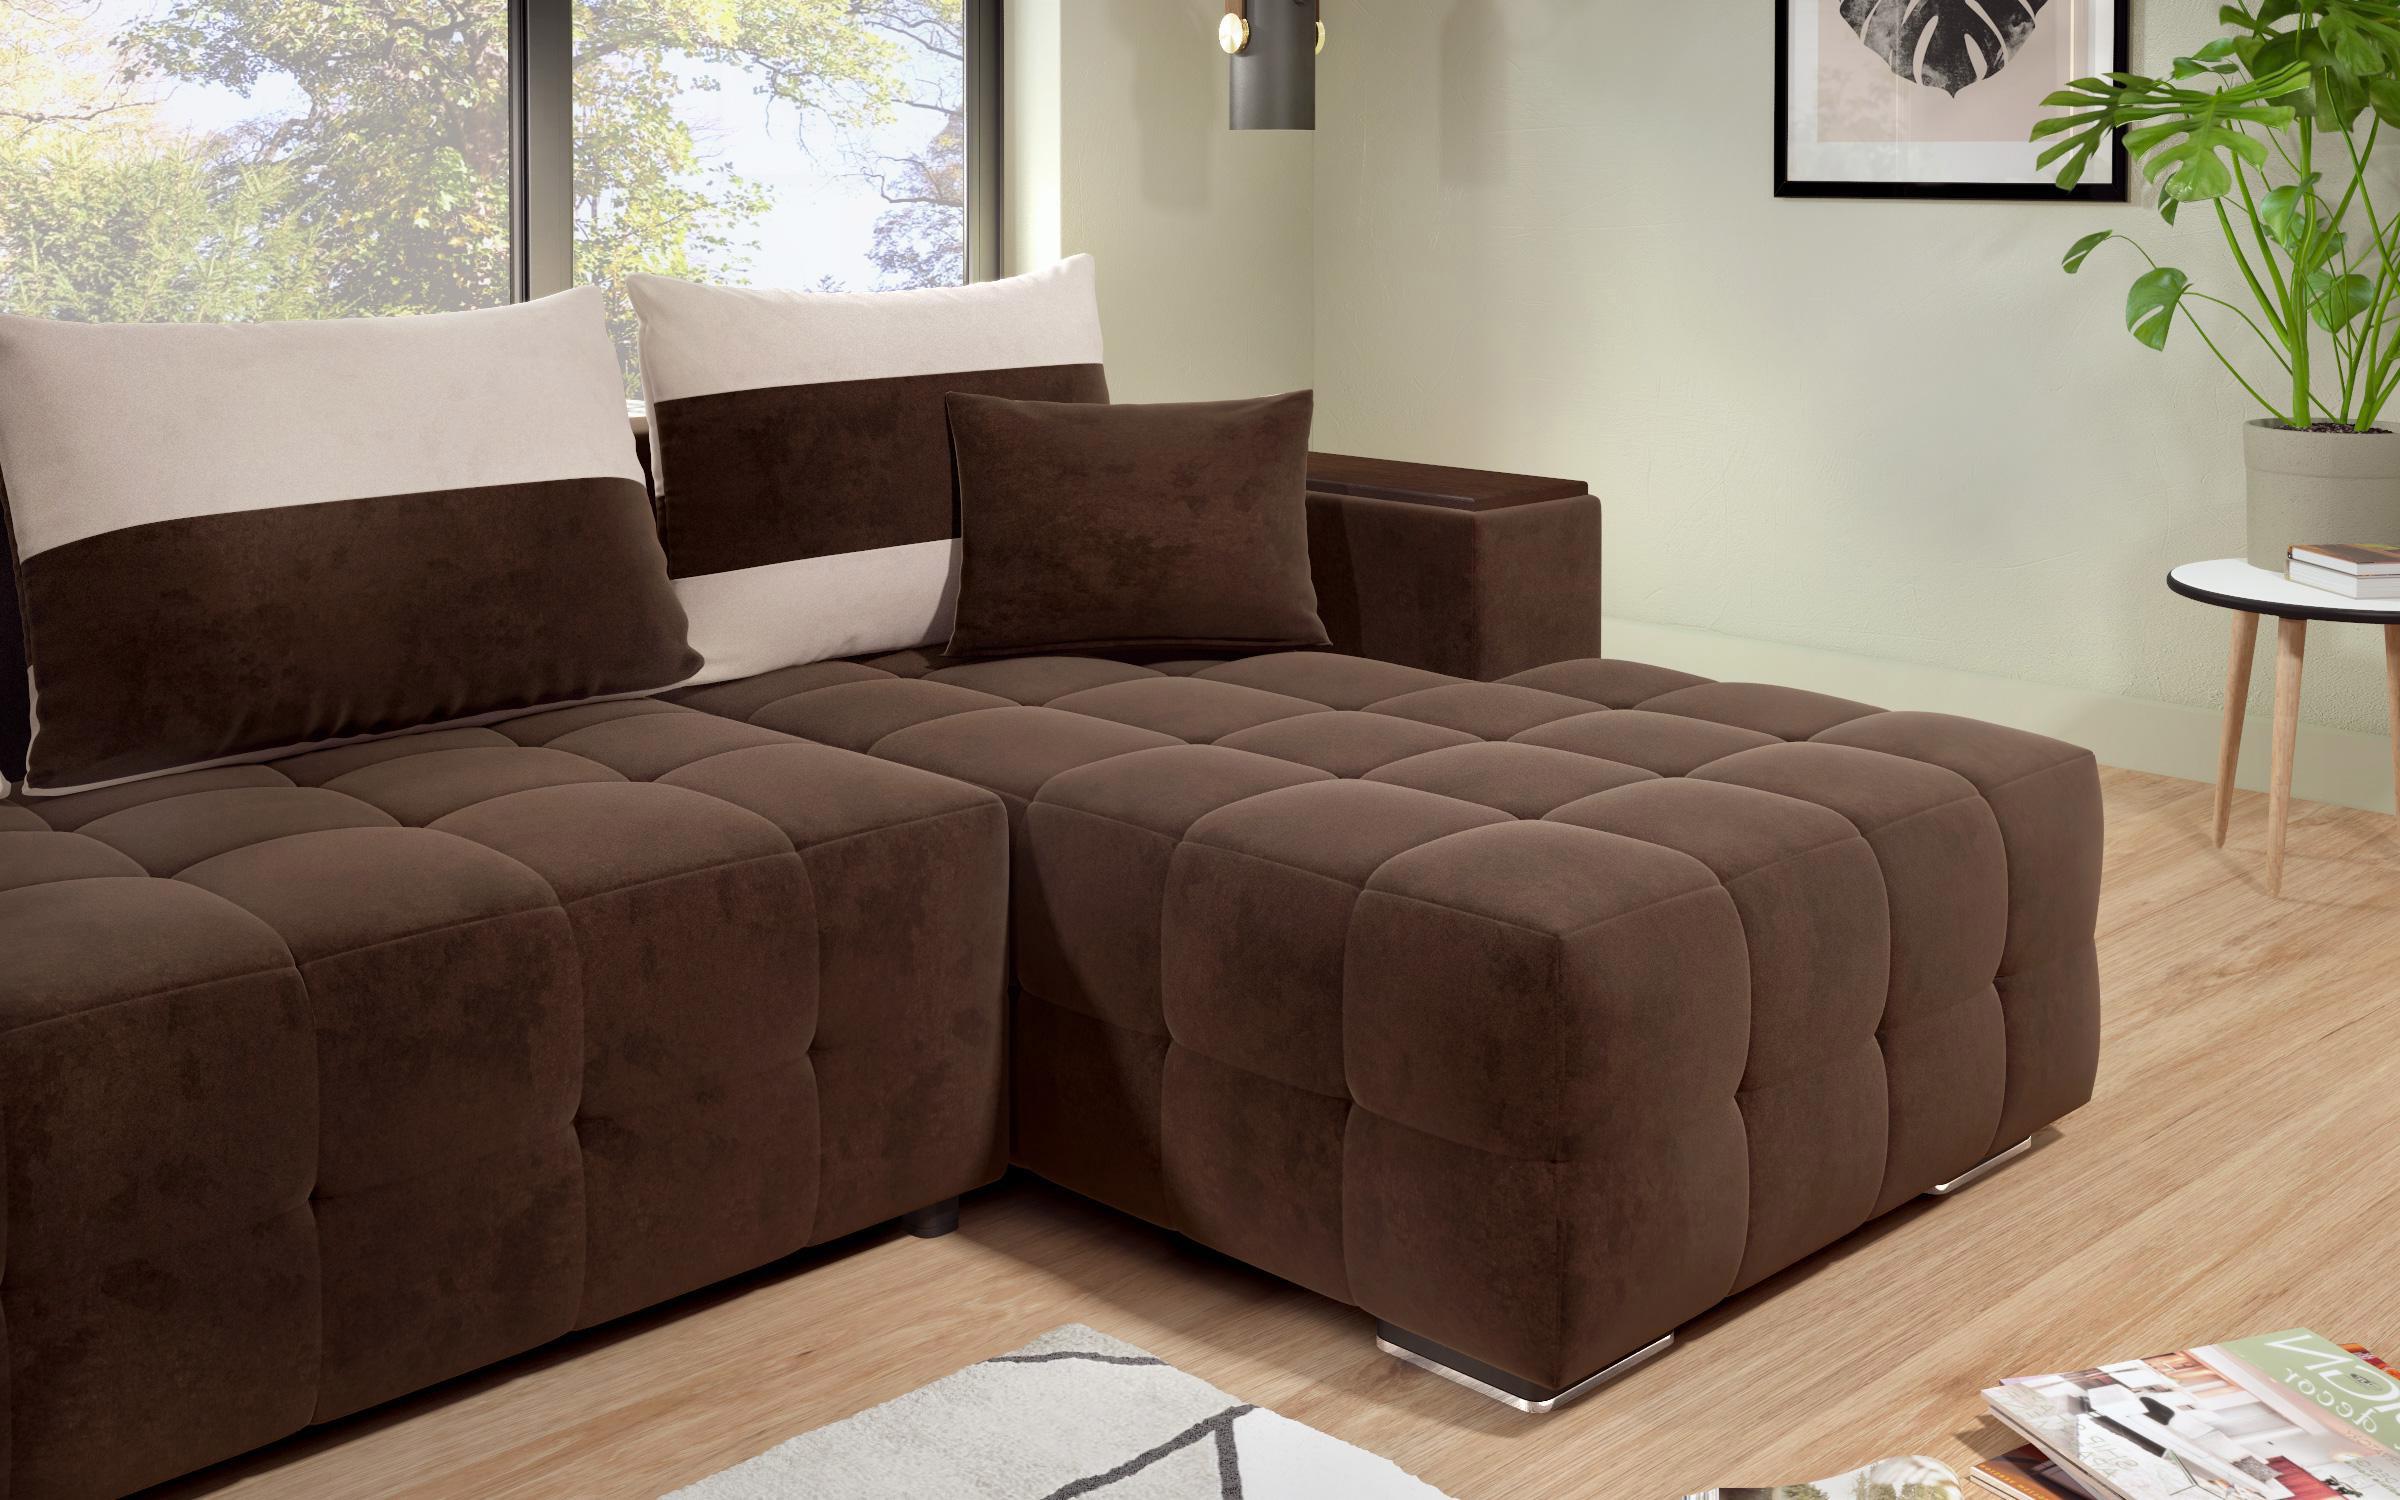 Γωνιακός καναπές - κρεβάτι με ανάκλιντρο και μπράτσο μίνι ραφιέρα Melvin S, σκούρο καφέ + ανοιχτό μπεζ  8